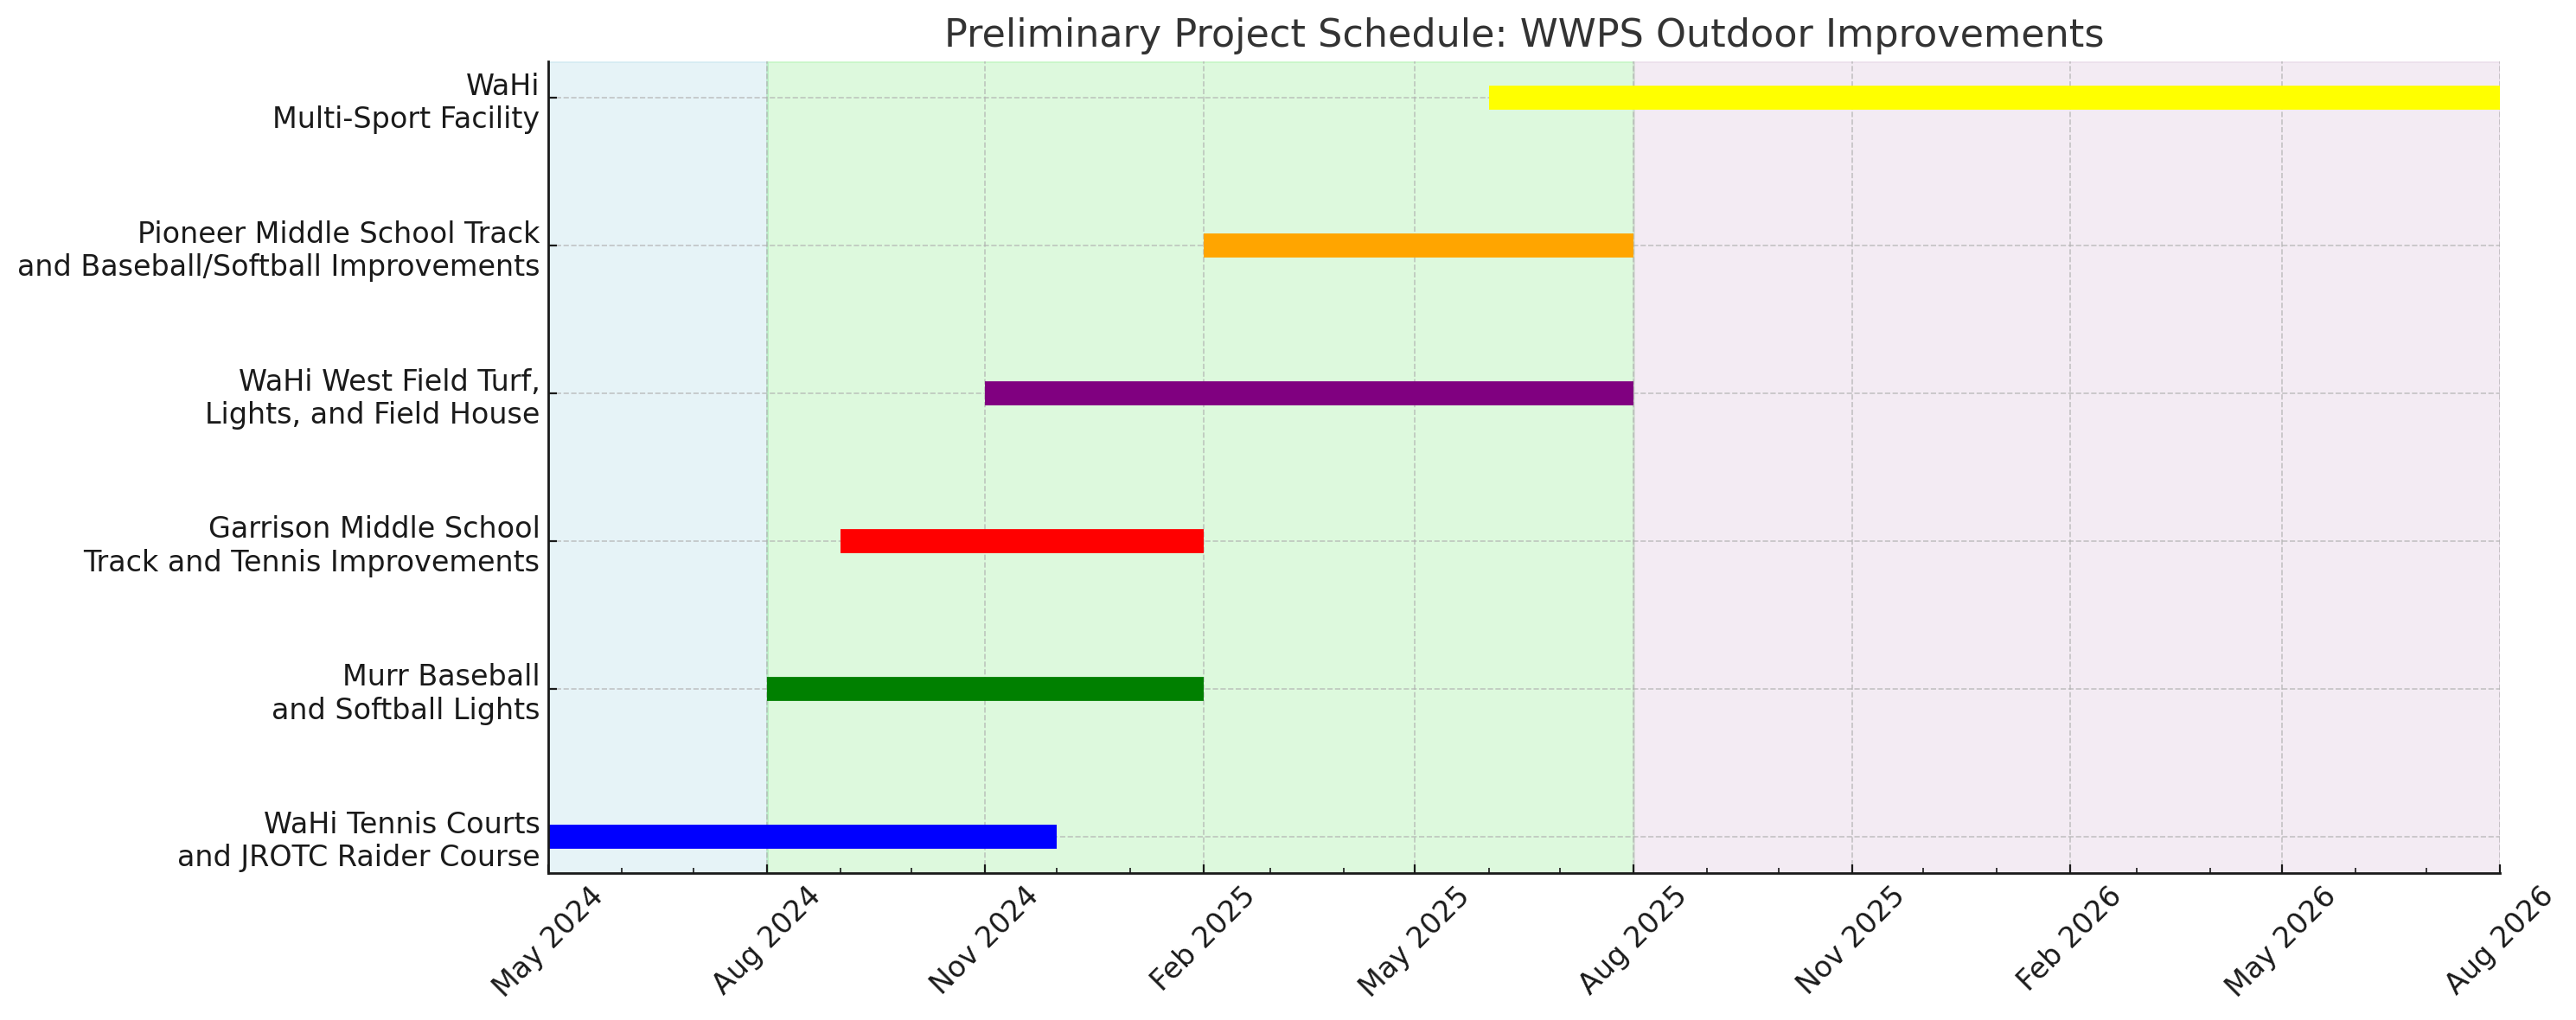 暫定プロジェクト スケジュール WWPS 調整後 2